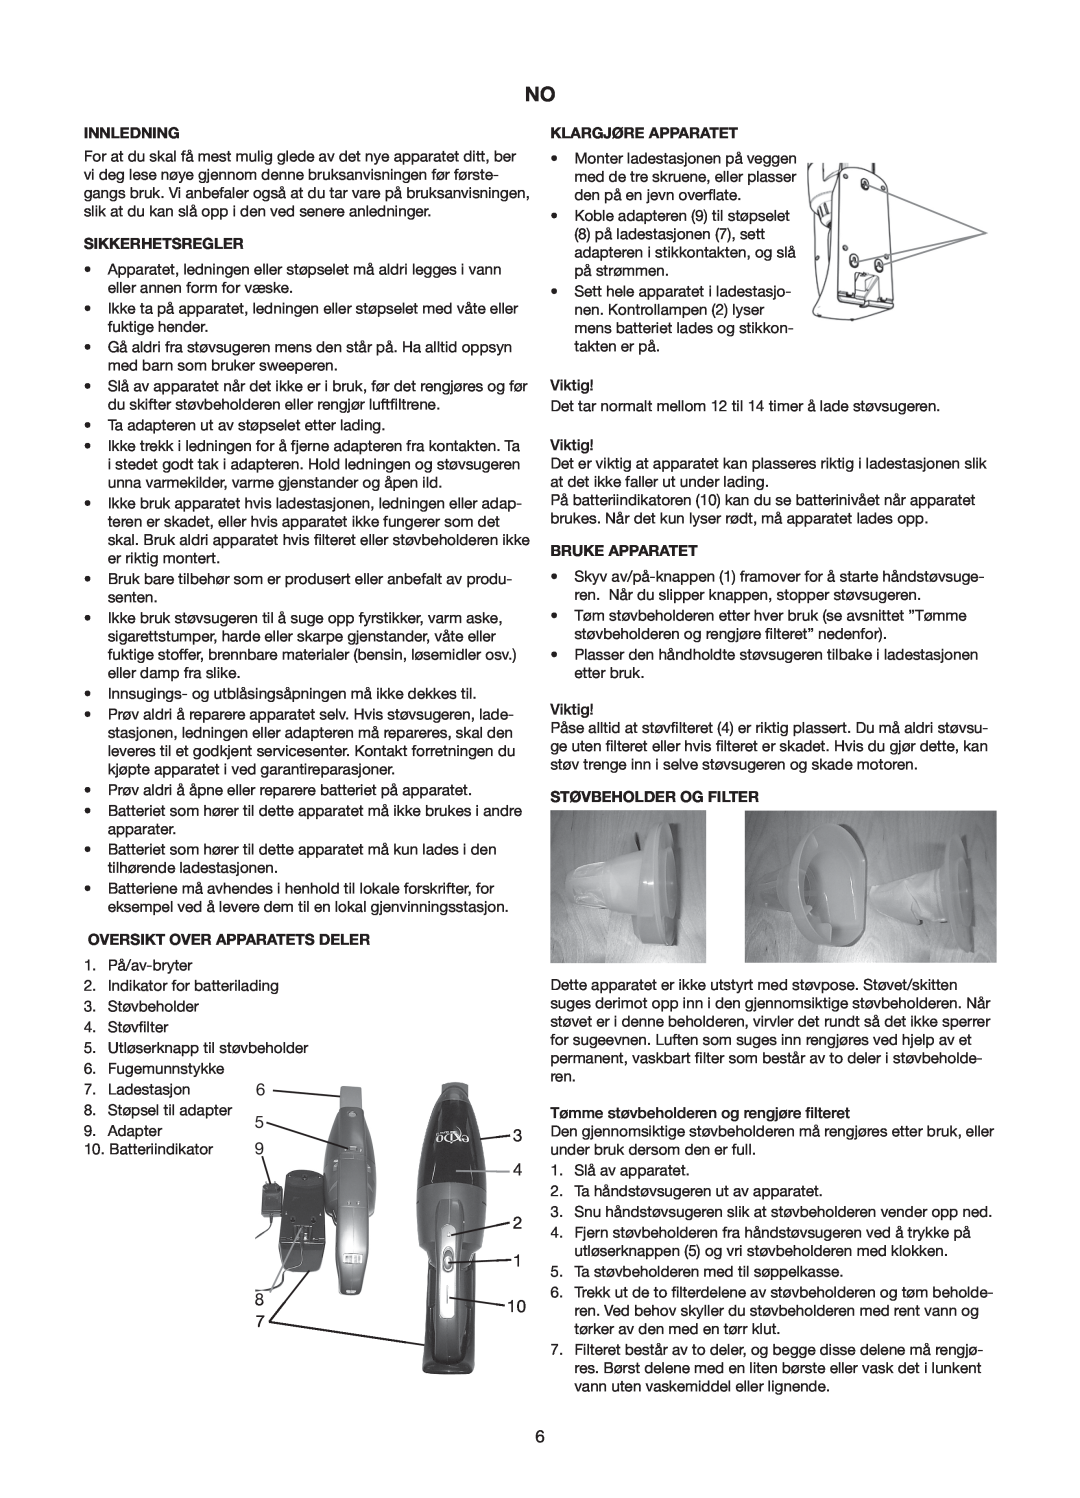 Melissa 240-112/113 manual Innledning, Sikkerhetsregler, Oversikt Over Apparatets Deler 